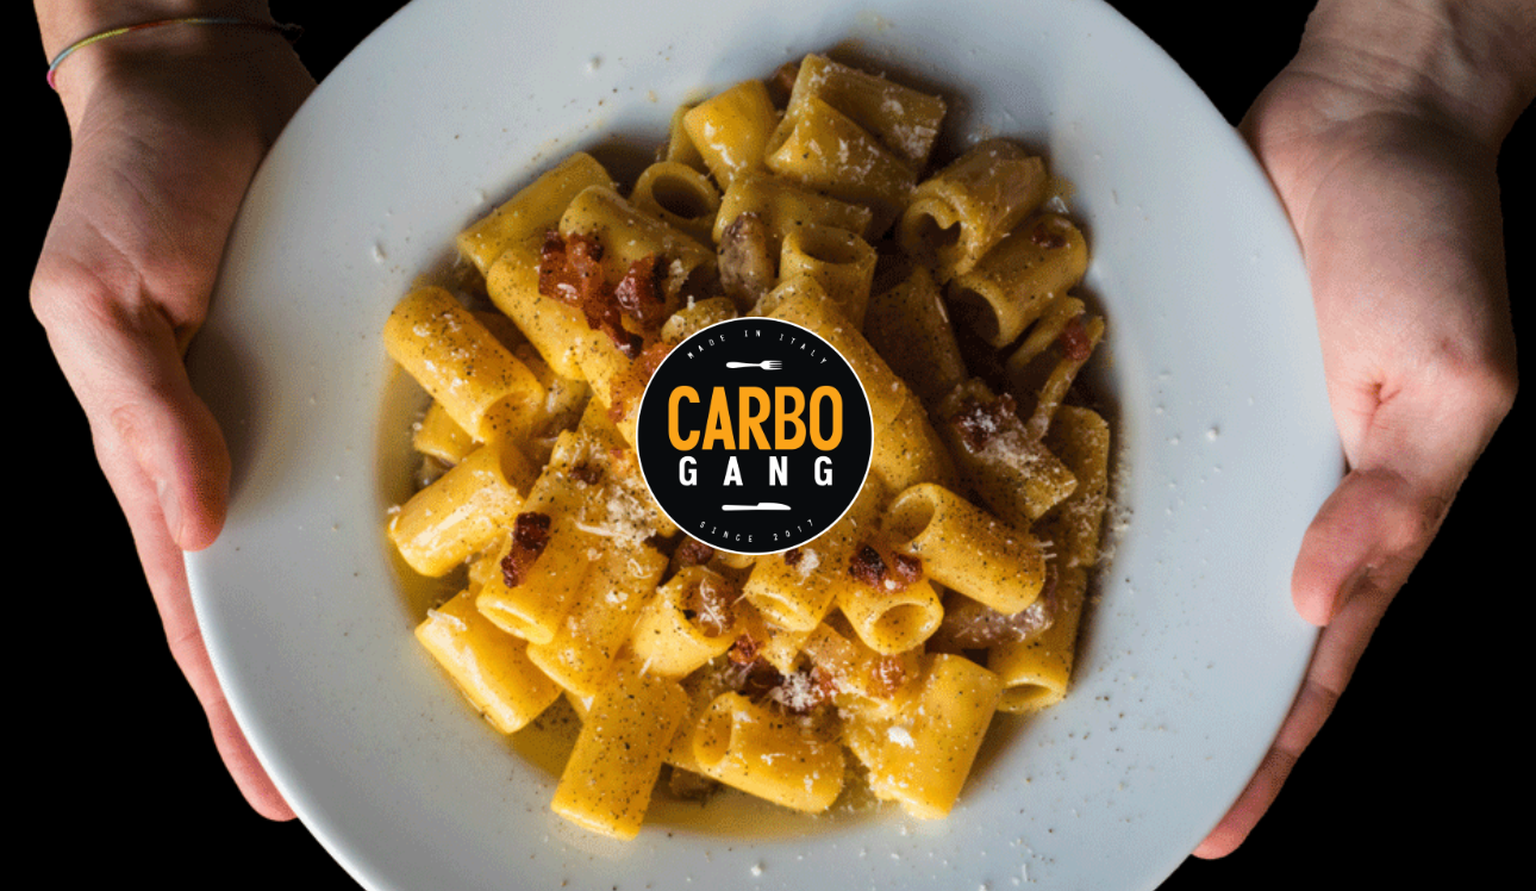 Carbogang carbonara essen food italien rom lazio pasta guanciale pecorino https://www.instagram.com/carbogang/ https://www.carbogang.com/